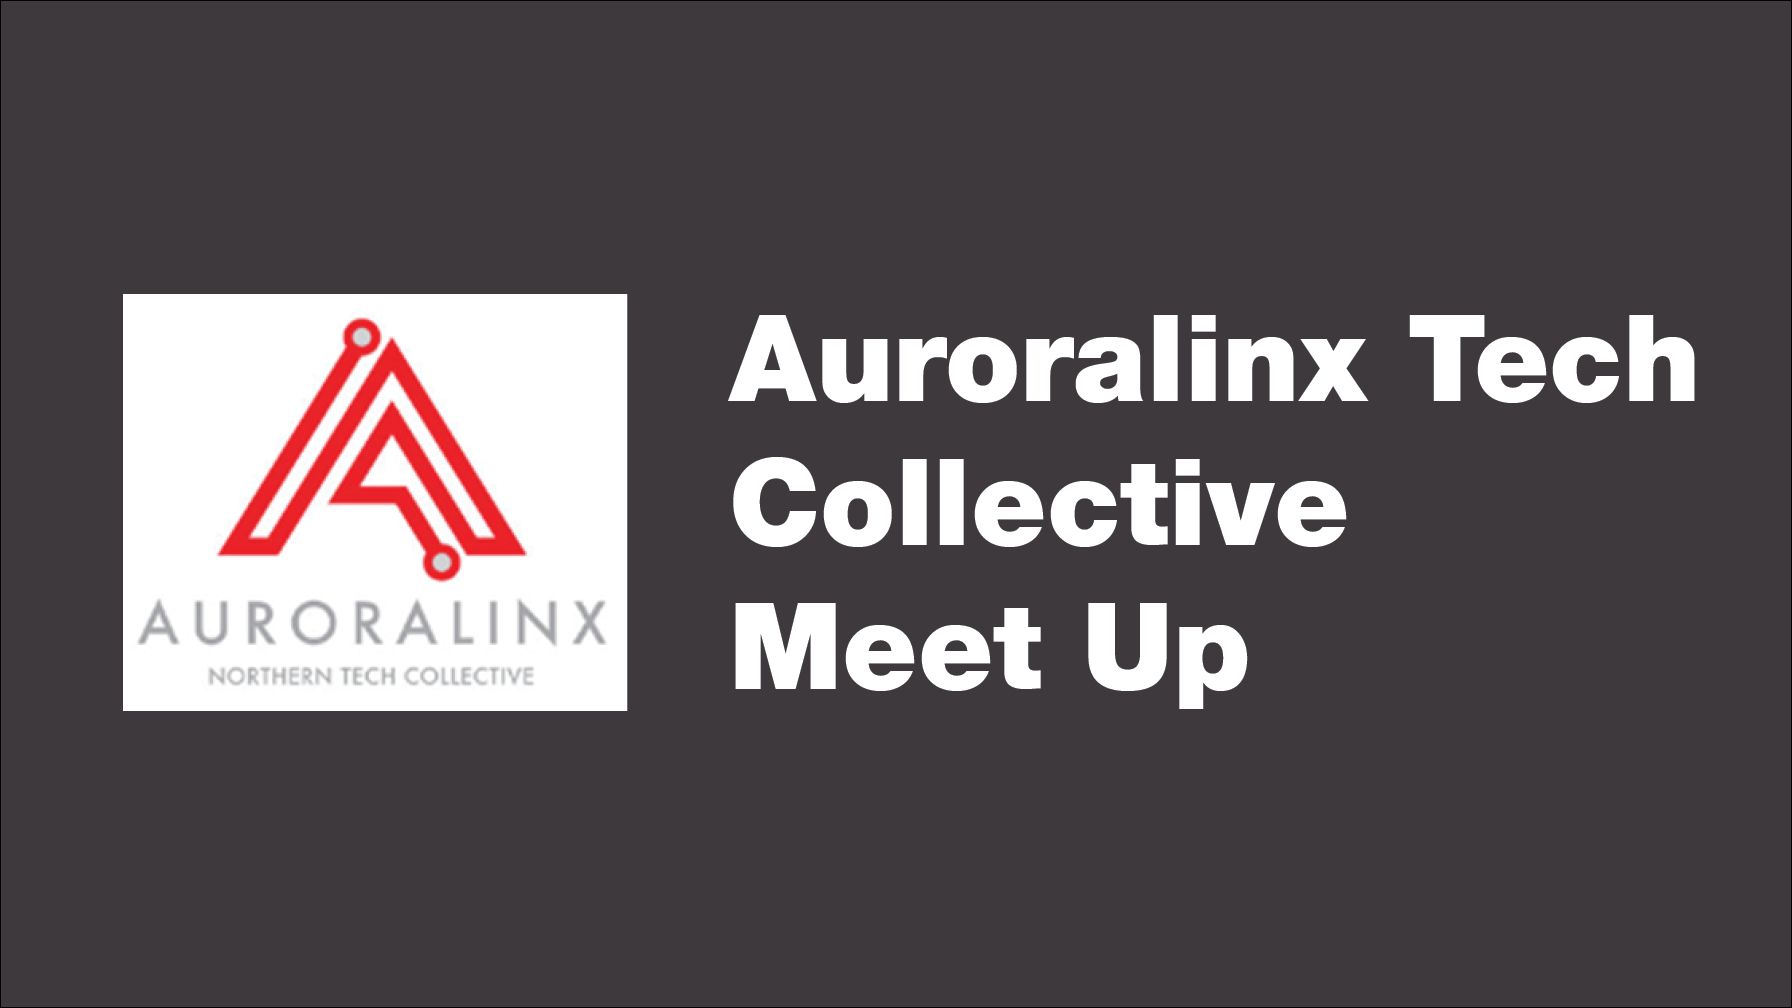 Auroralinx Tech Collective Meet Up